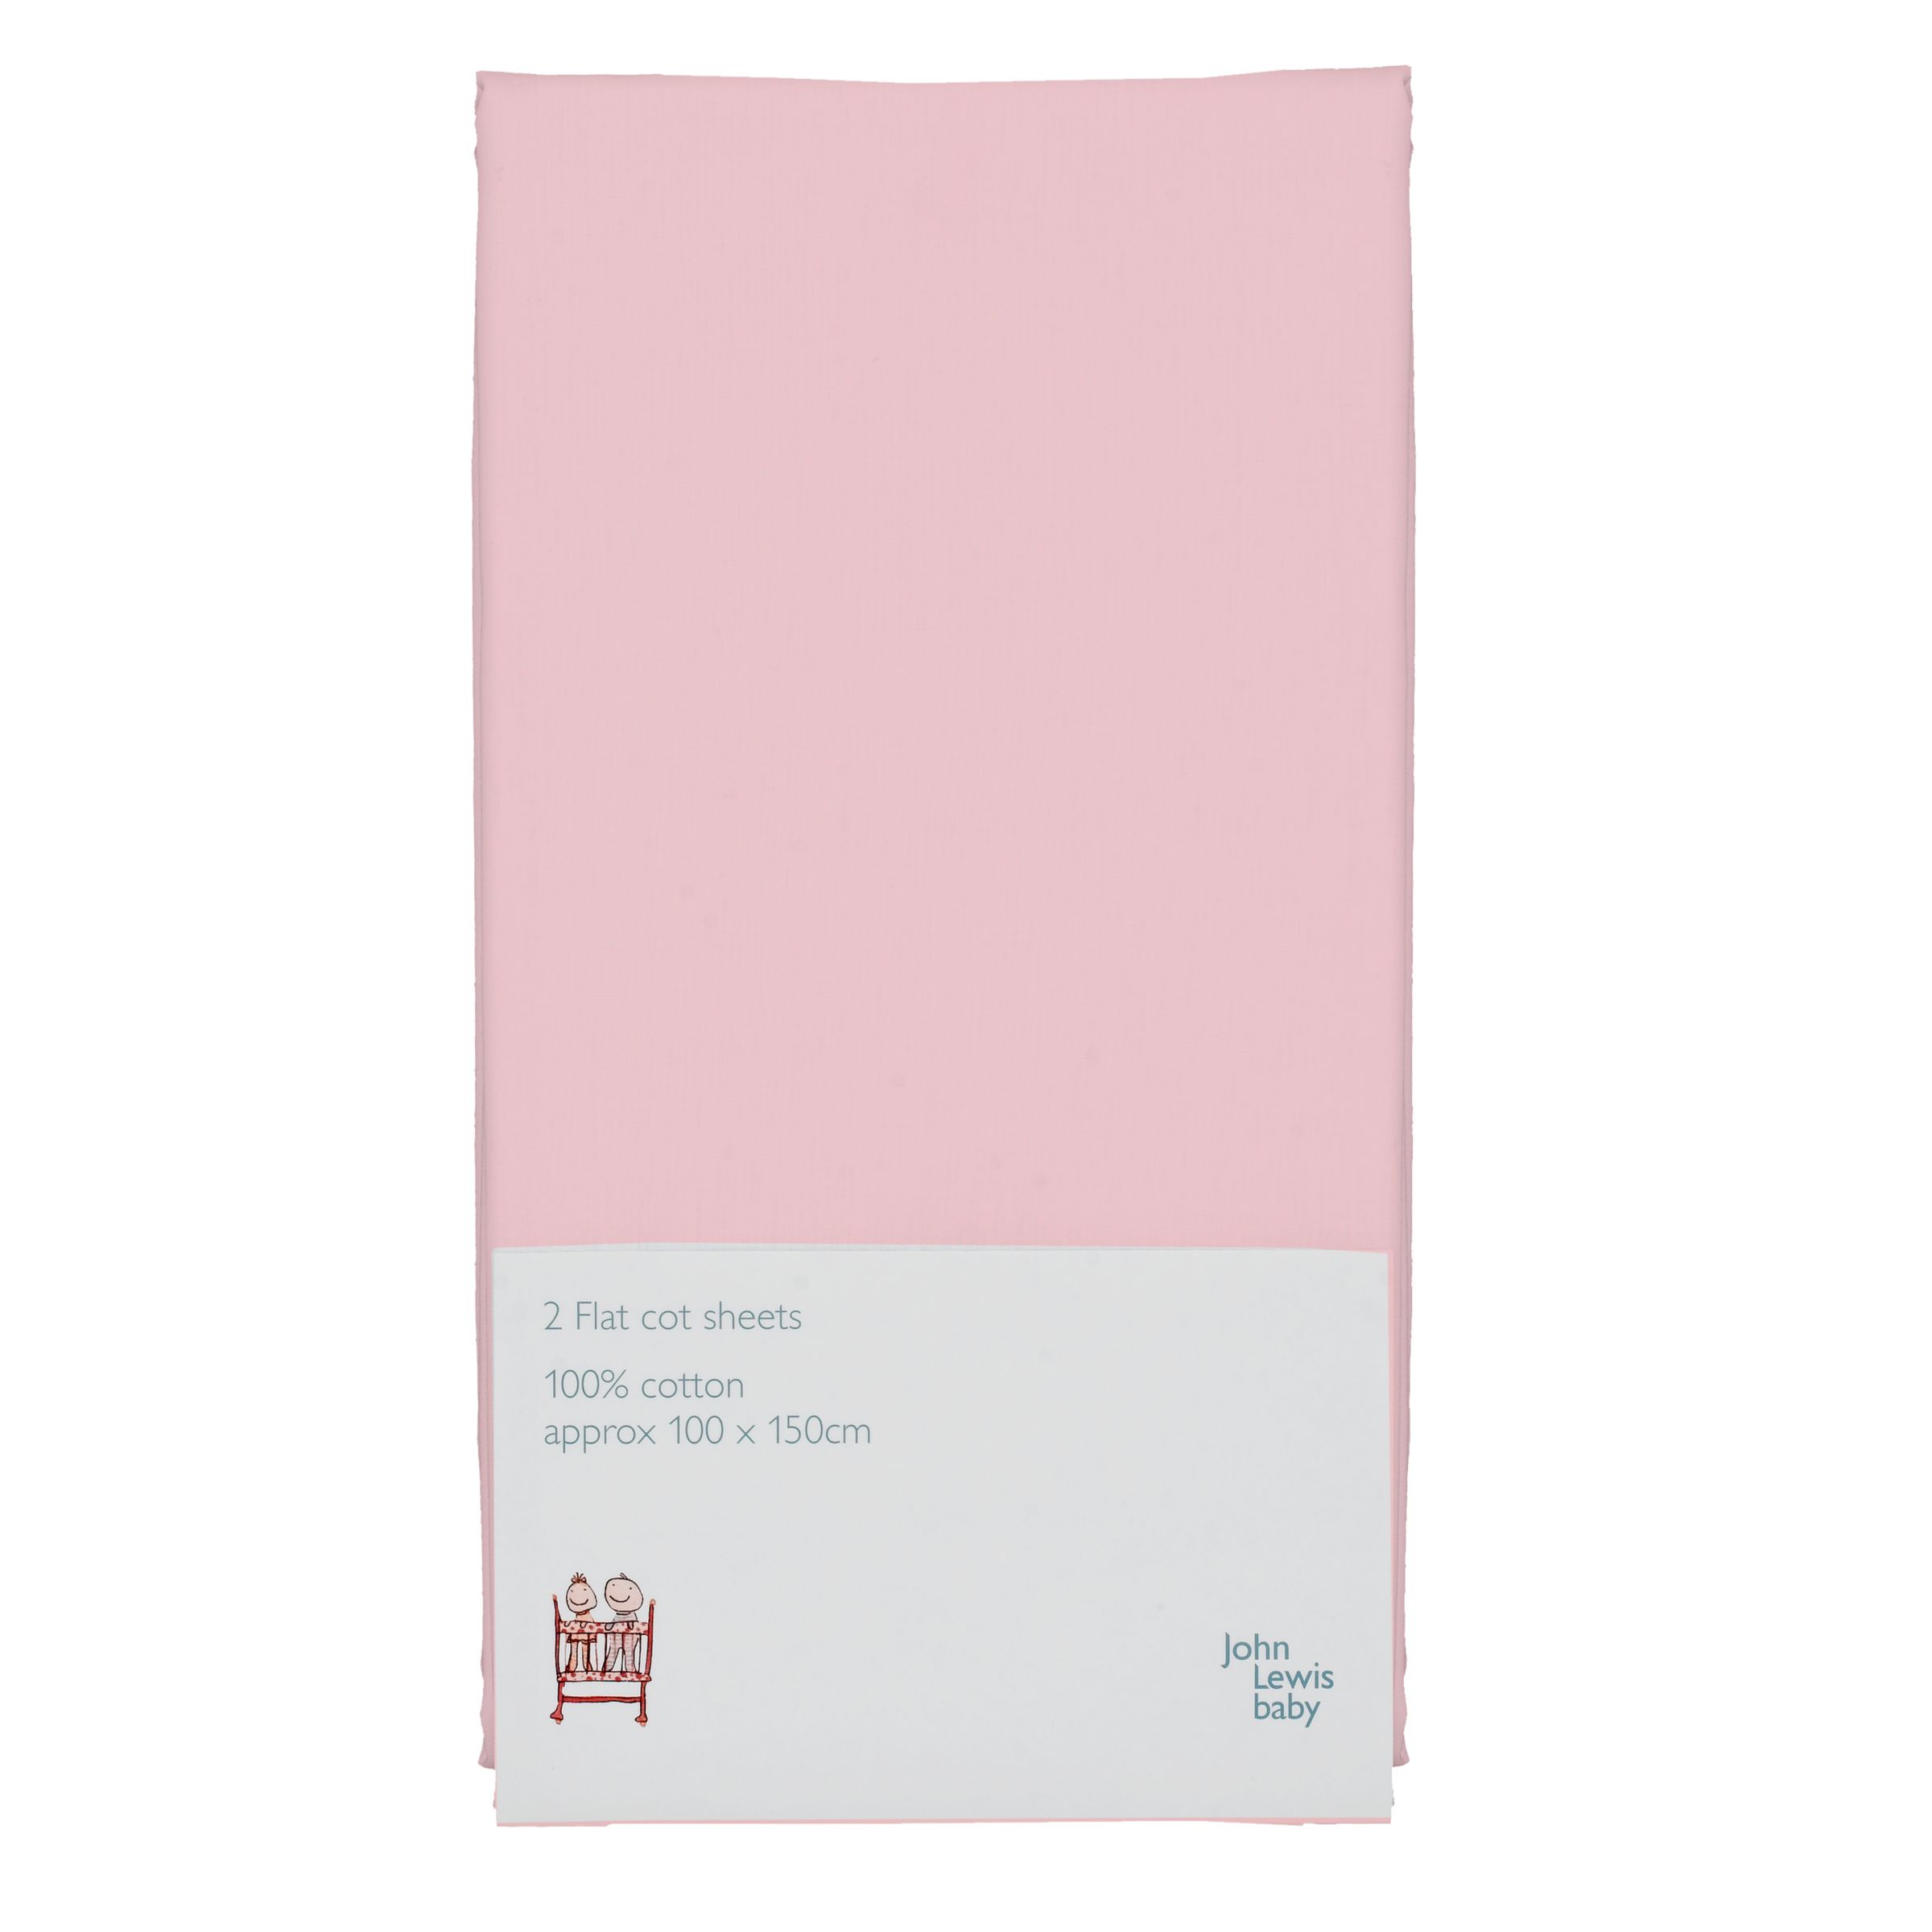 John Lewis Baby Flat Cot Sheet, Pack of 2, Pink